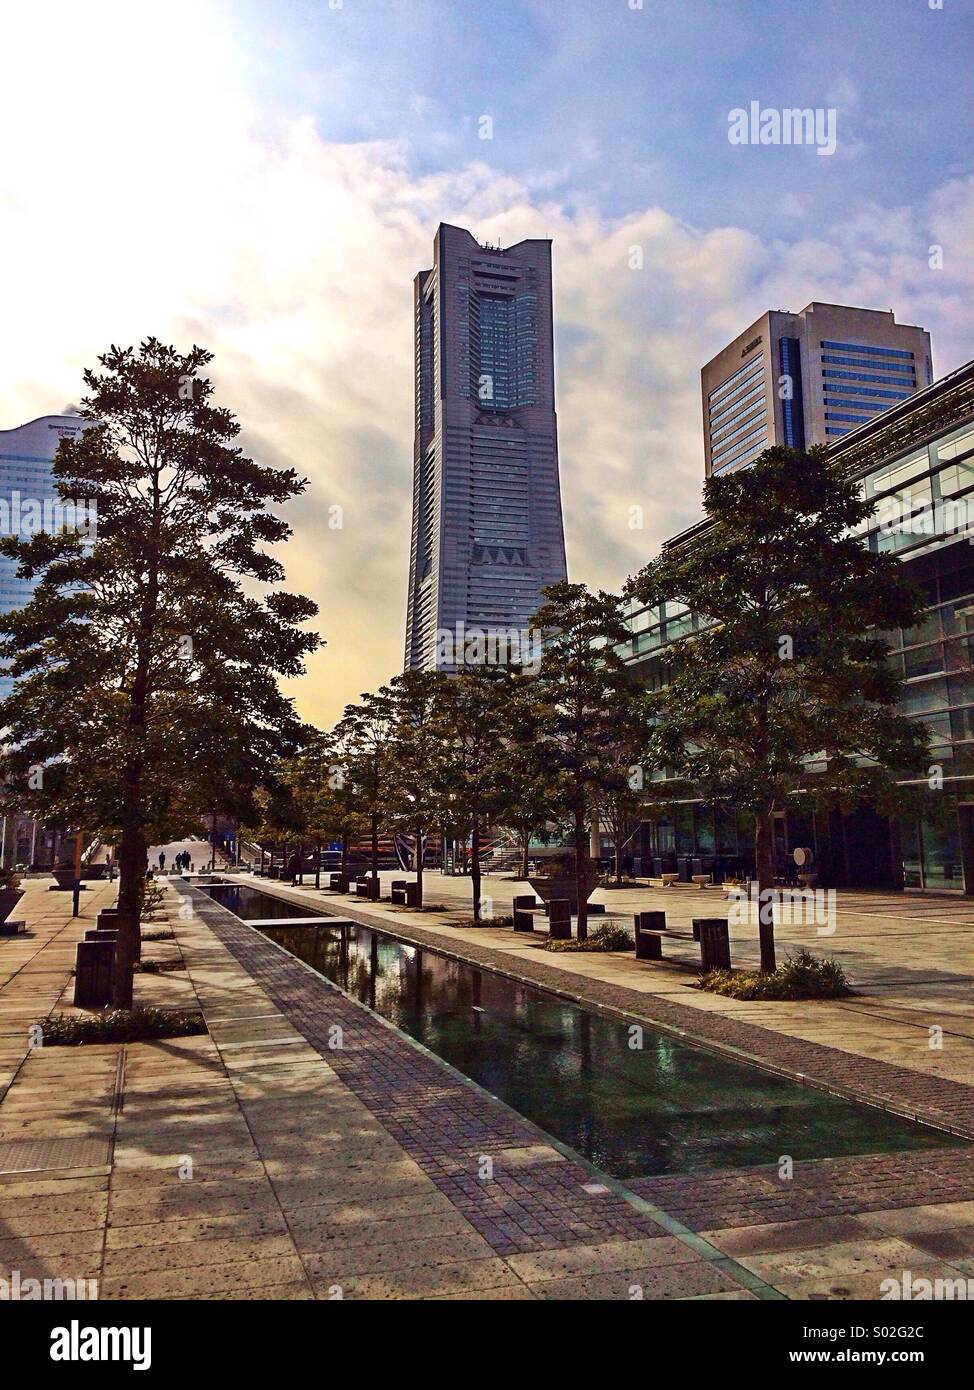 Landmark Tower in Minato Mirai Stock Photo